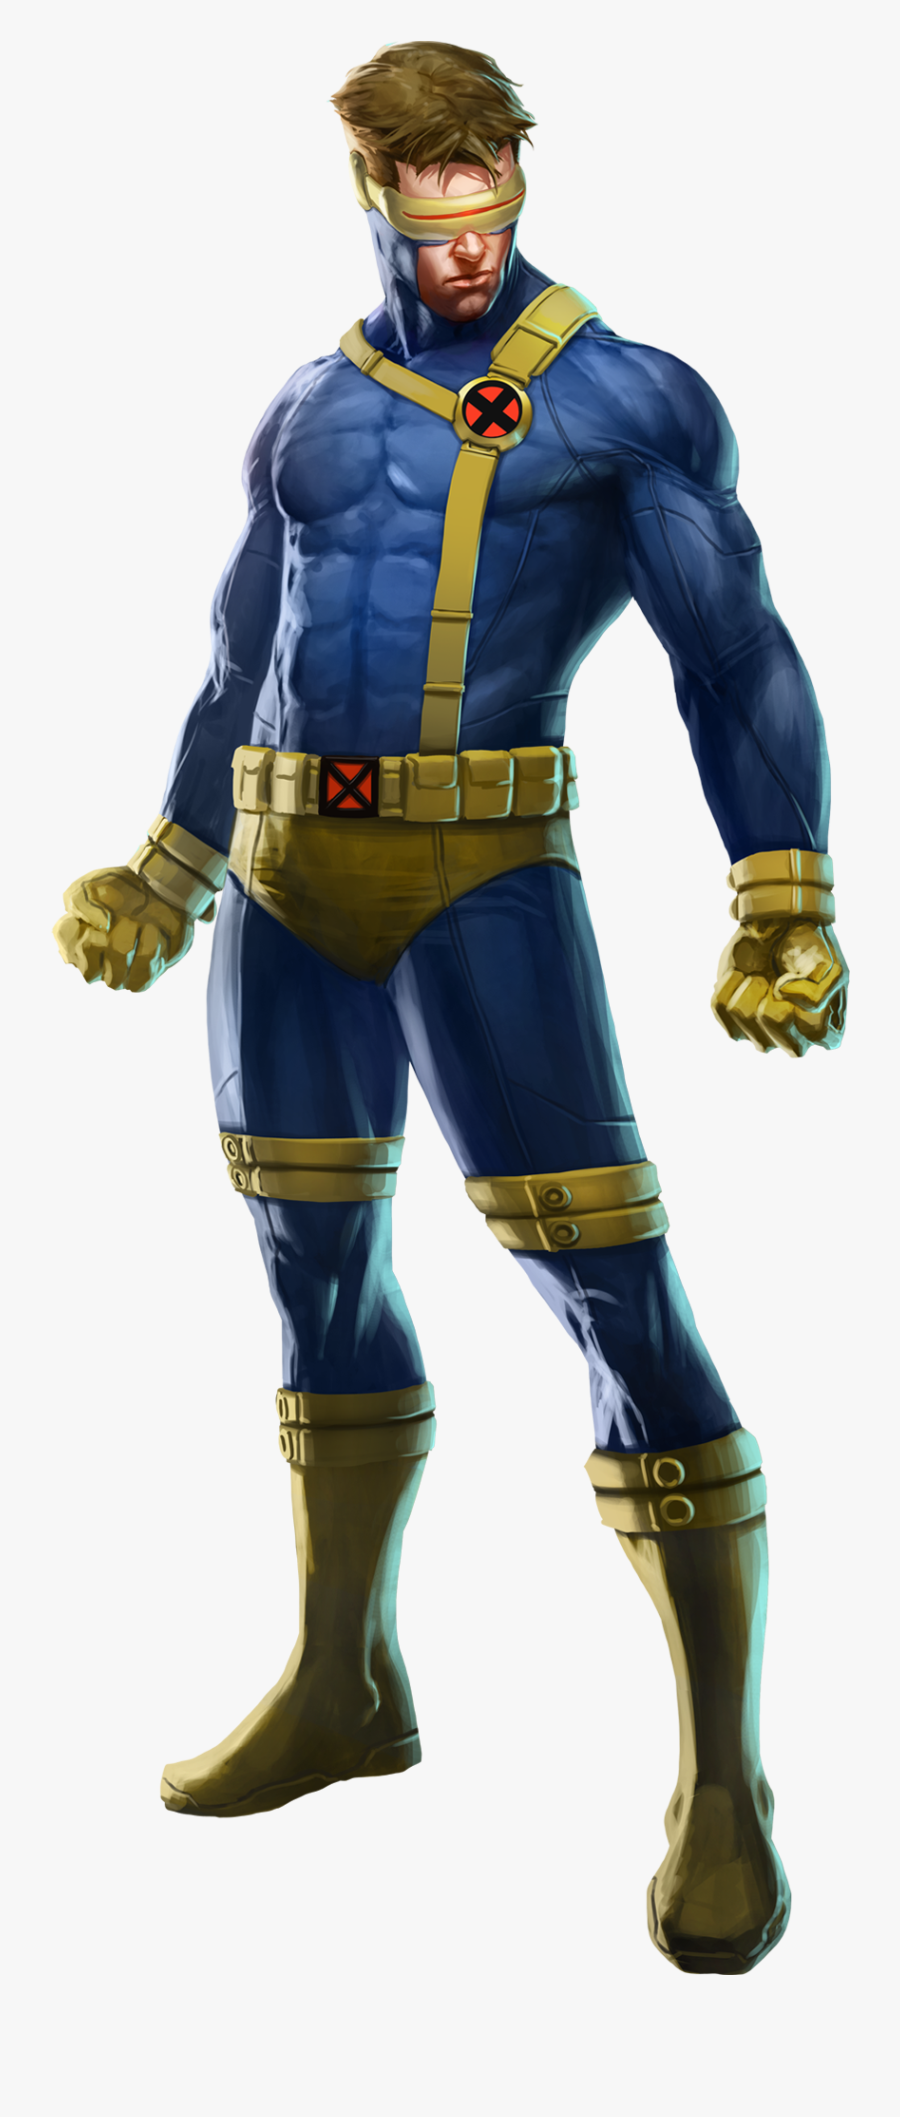 Cyclops X Men Png, Transparent Clipart